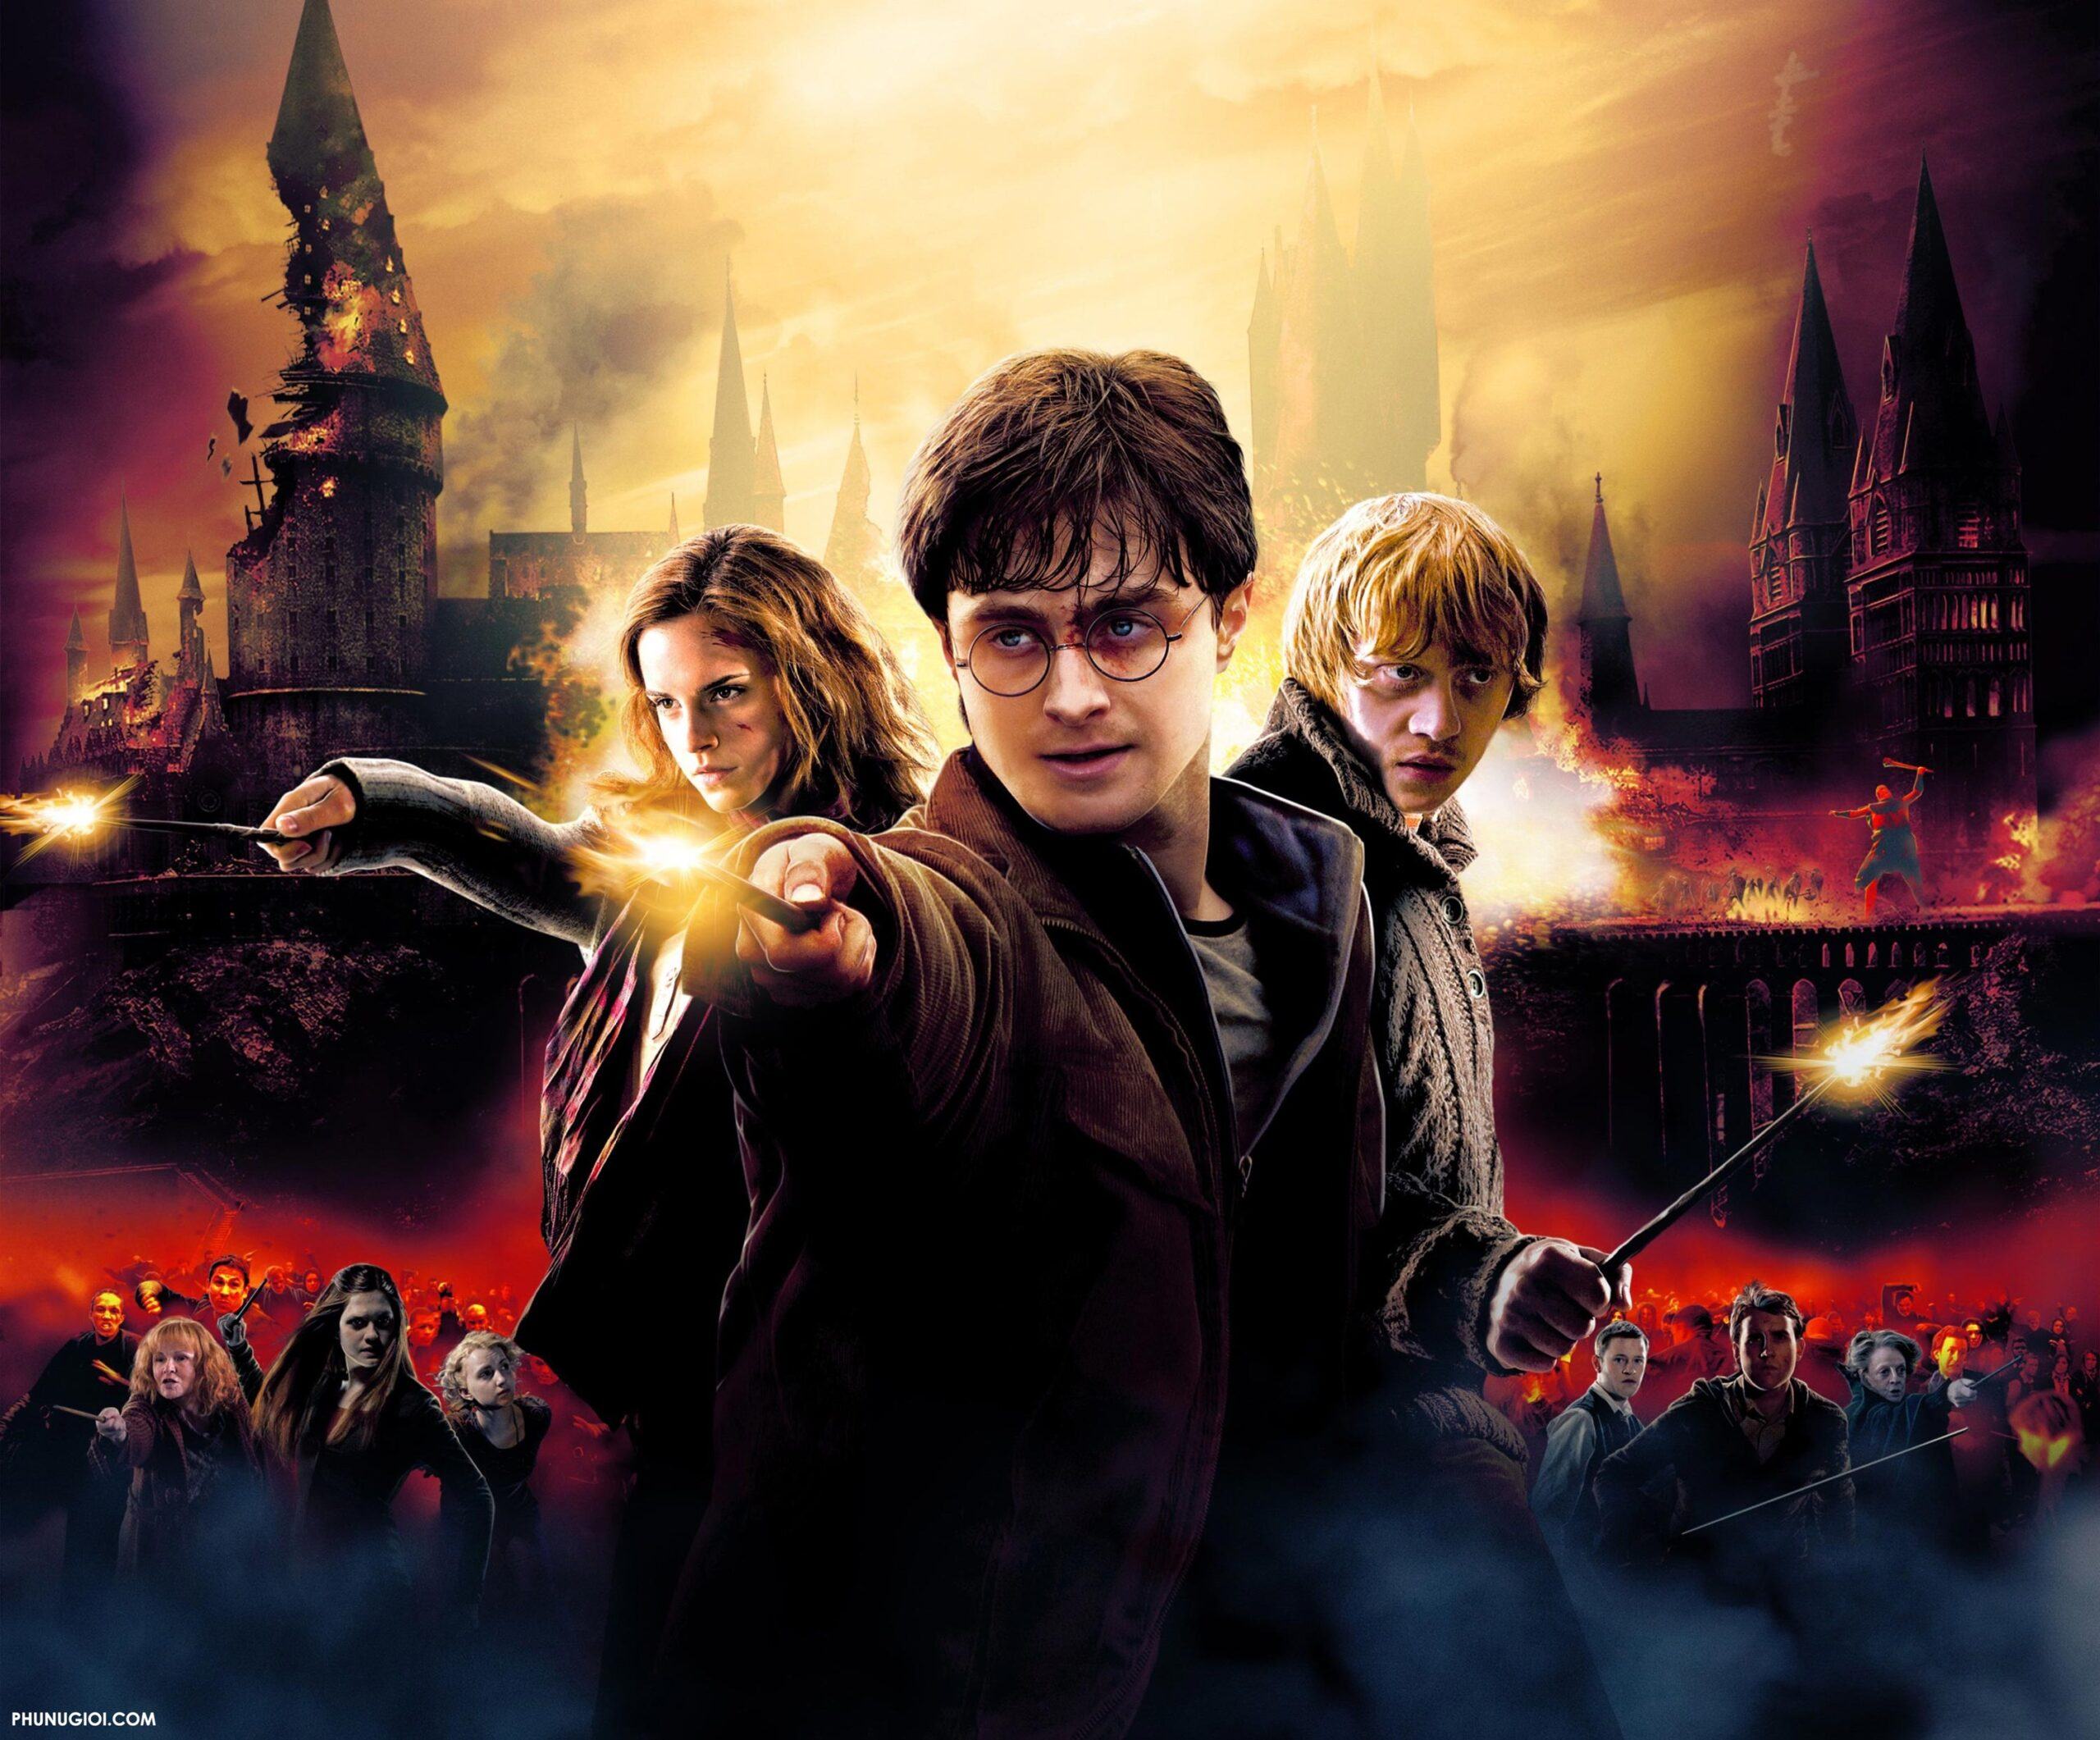 99 Hình Ảnh Harry Potter Đẹp Nhức Cái Nách XEM NGAY